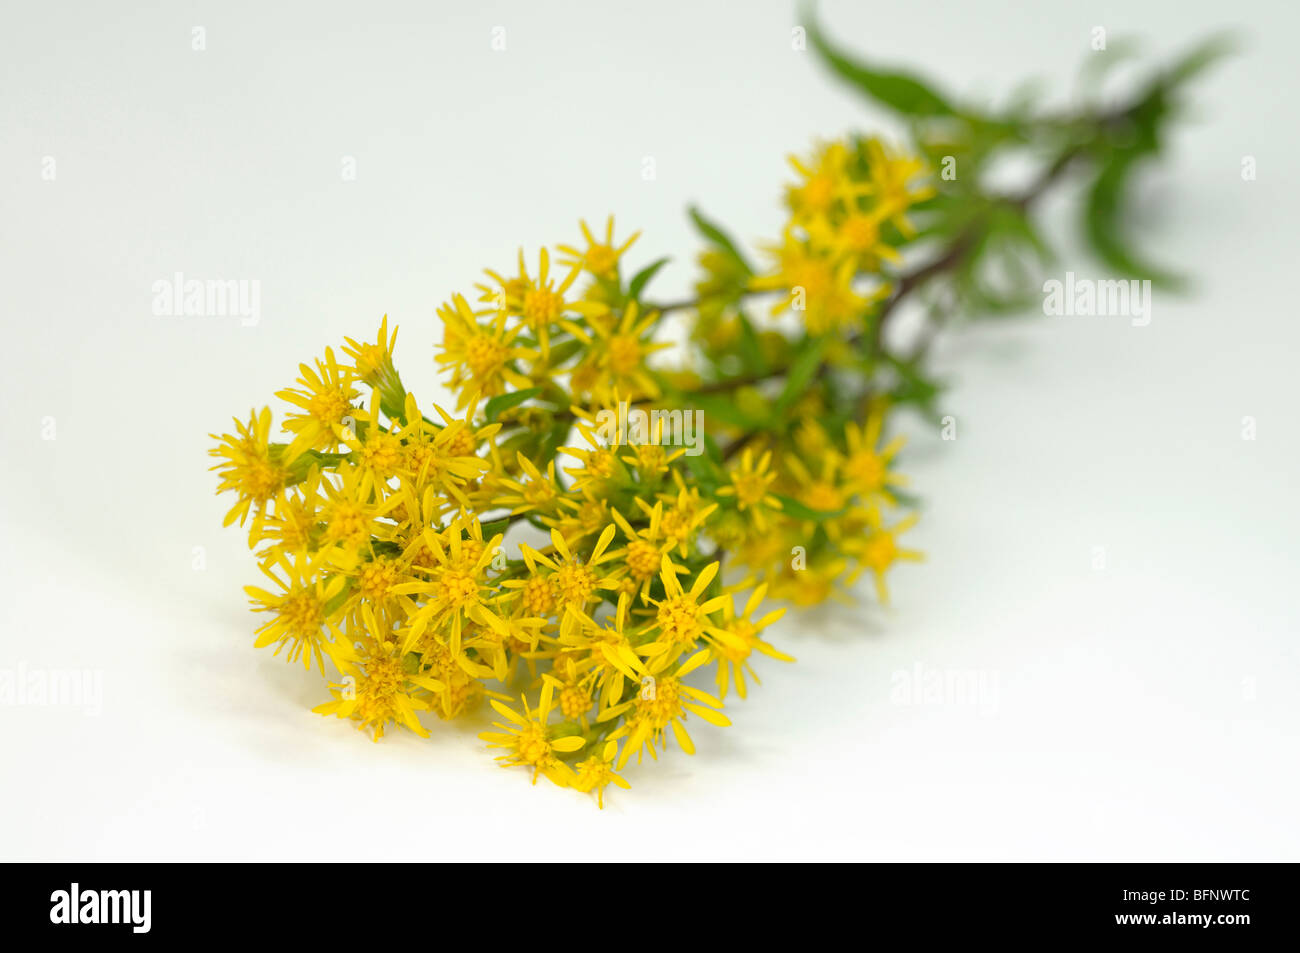 European Goldenrod (Solidago virgaurea), flowering stem, studio picture. Stock Photo